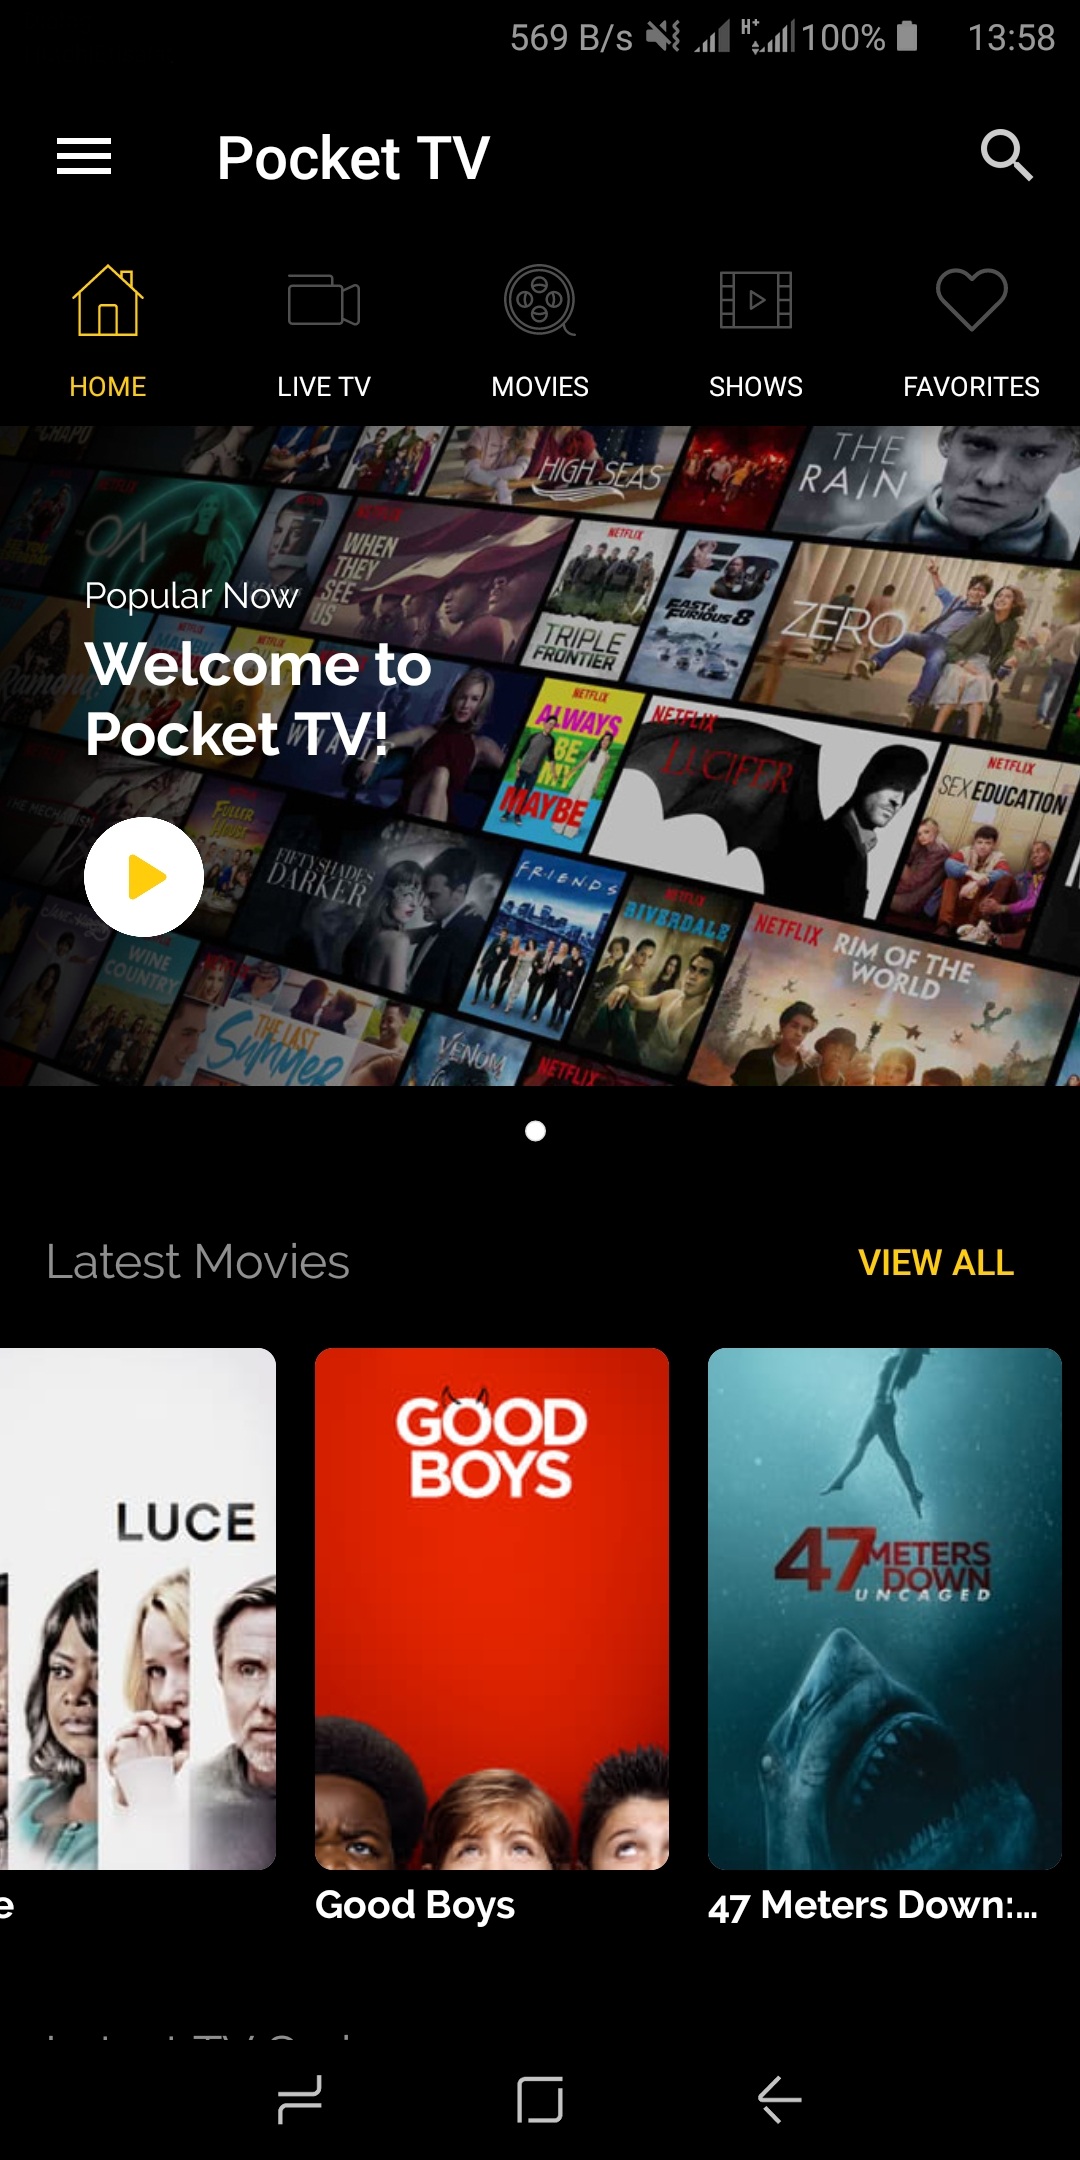 Pocket TV Mod Apk: Description, Features, UI and More